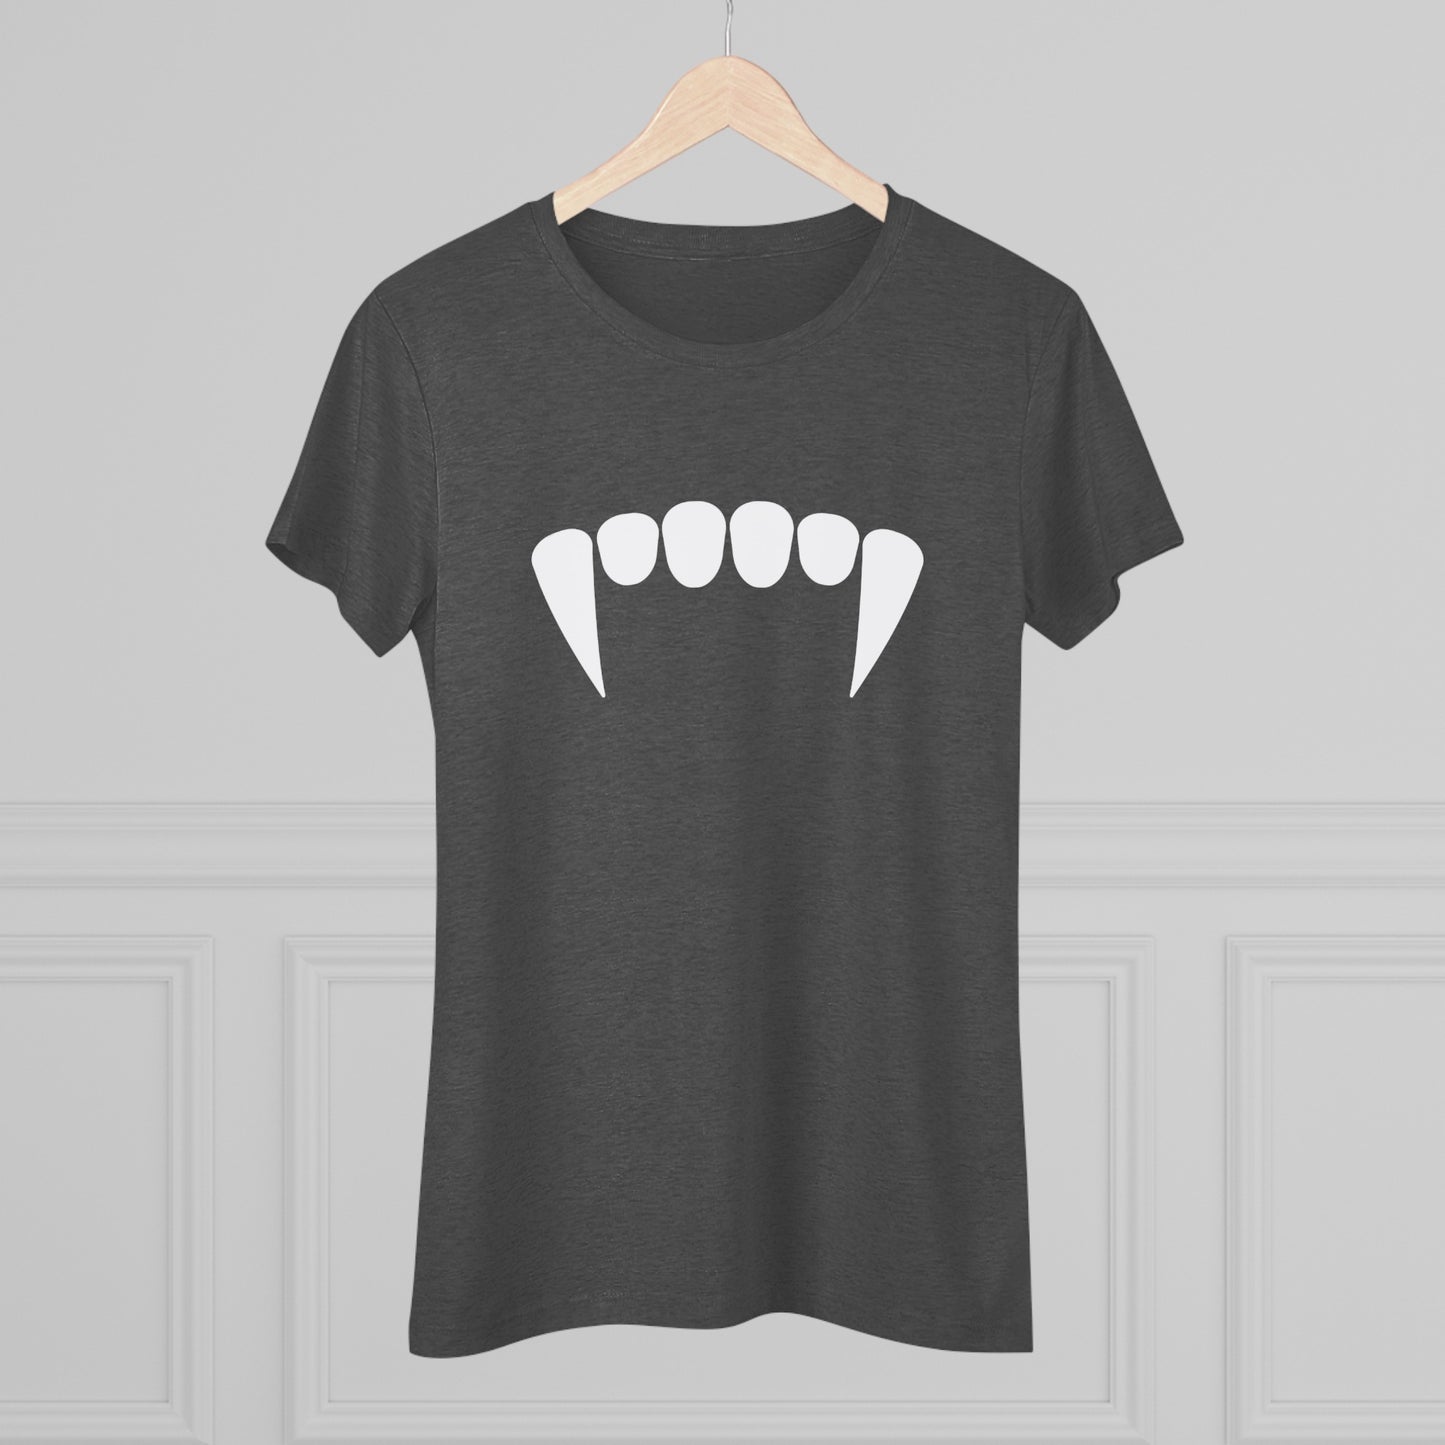 FANGS | Women's Triblend Tee | Vampire T-Shirt